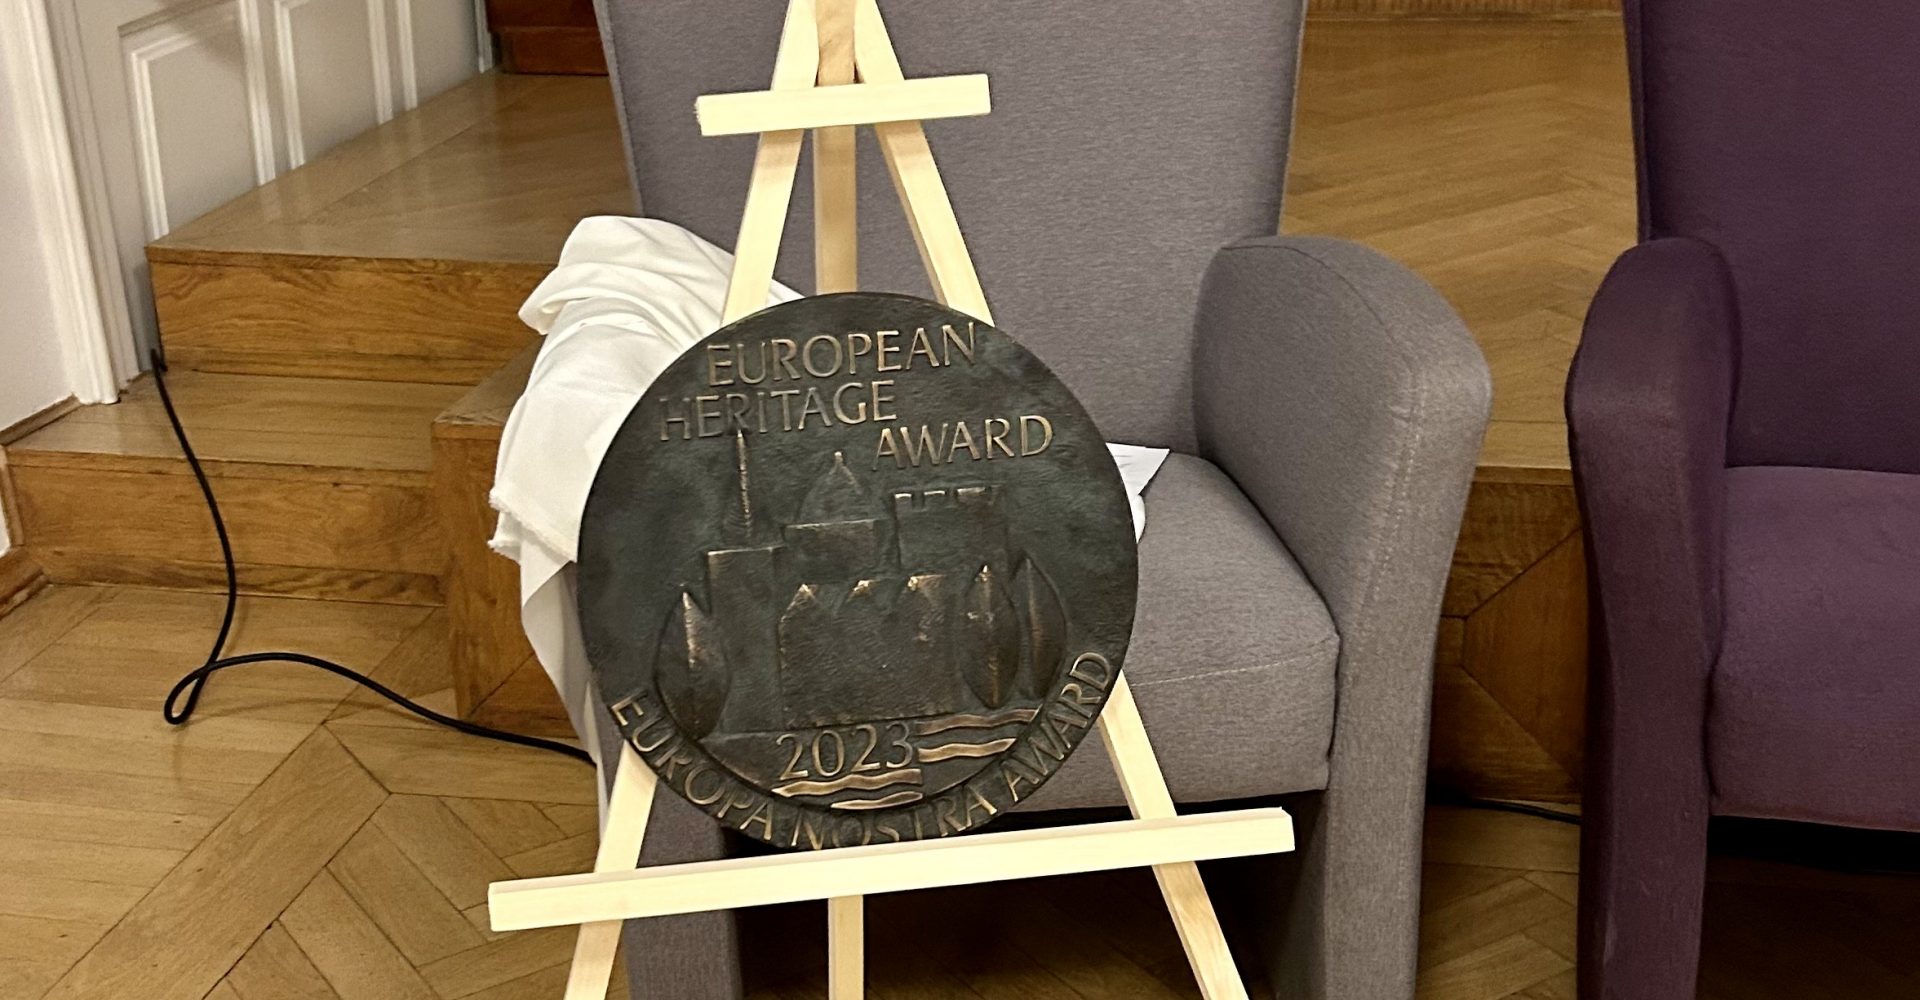 Відбулась церемонія нагородження European Heritage Awards / Europa Nostra Awards 2023